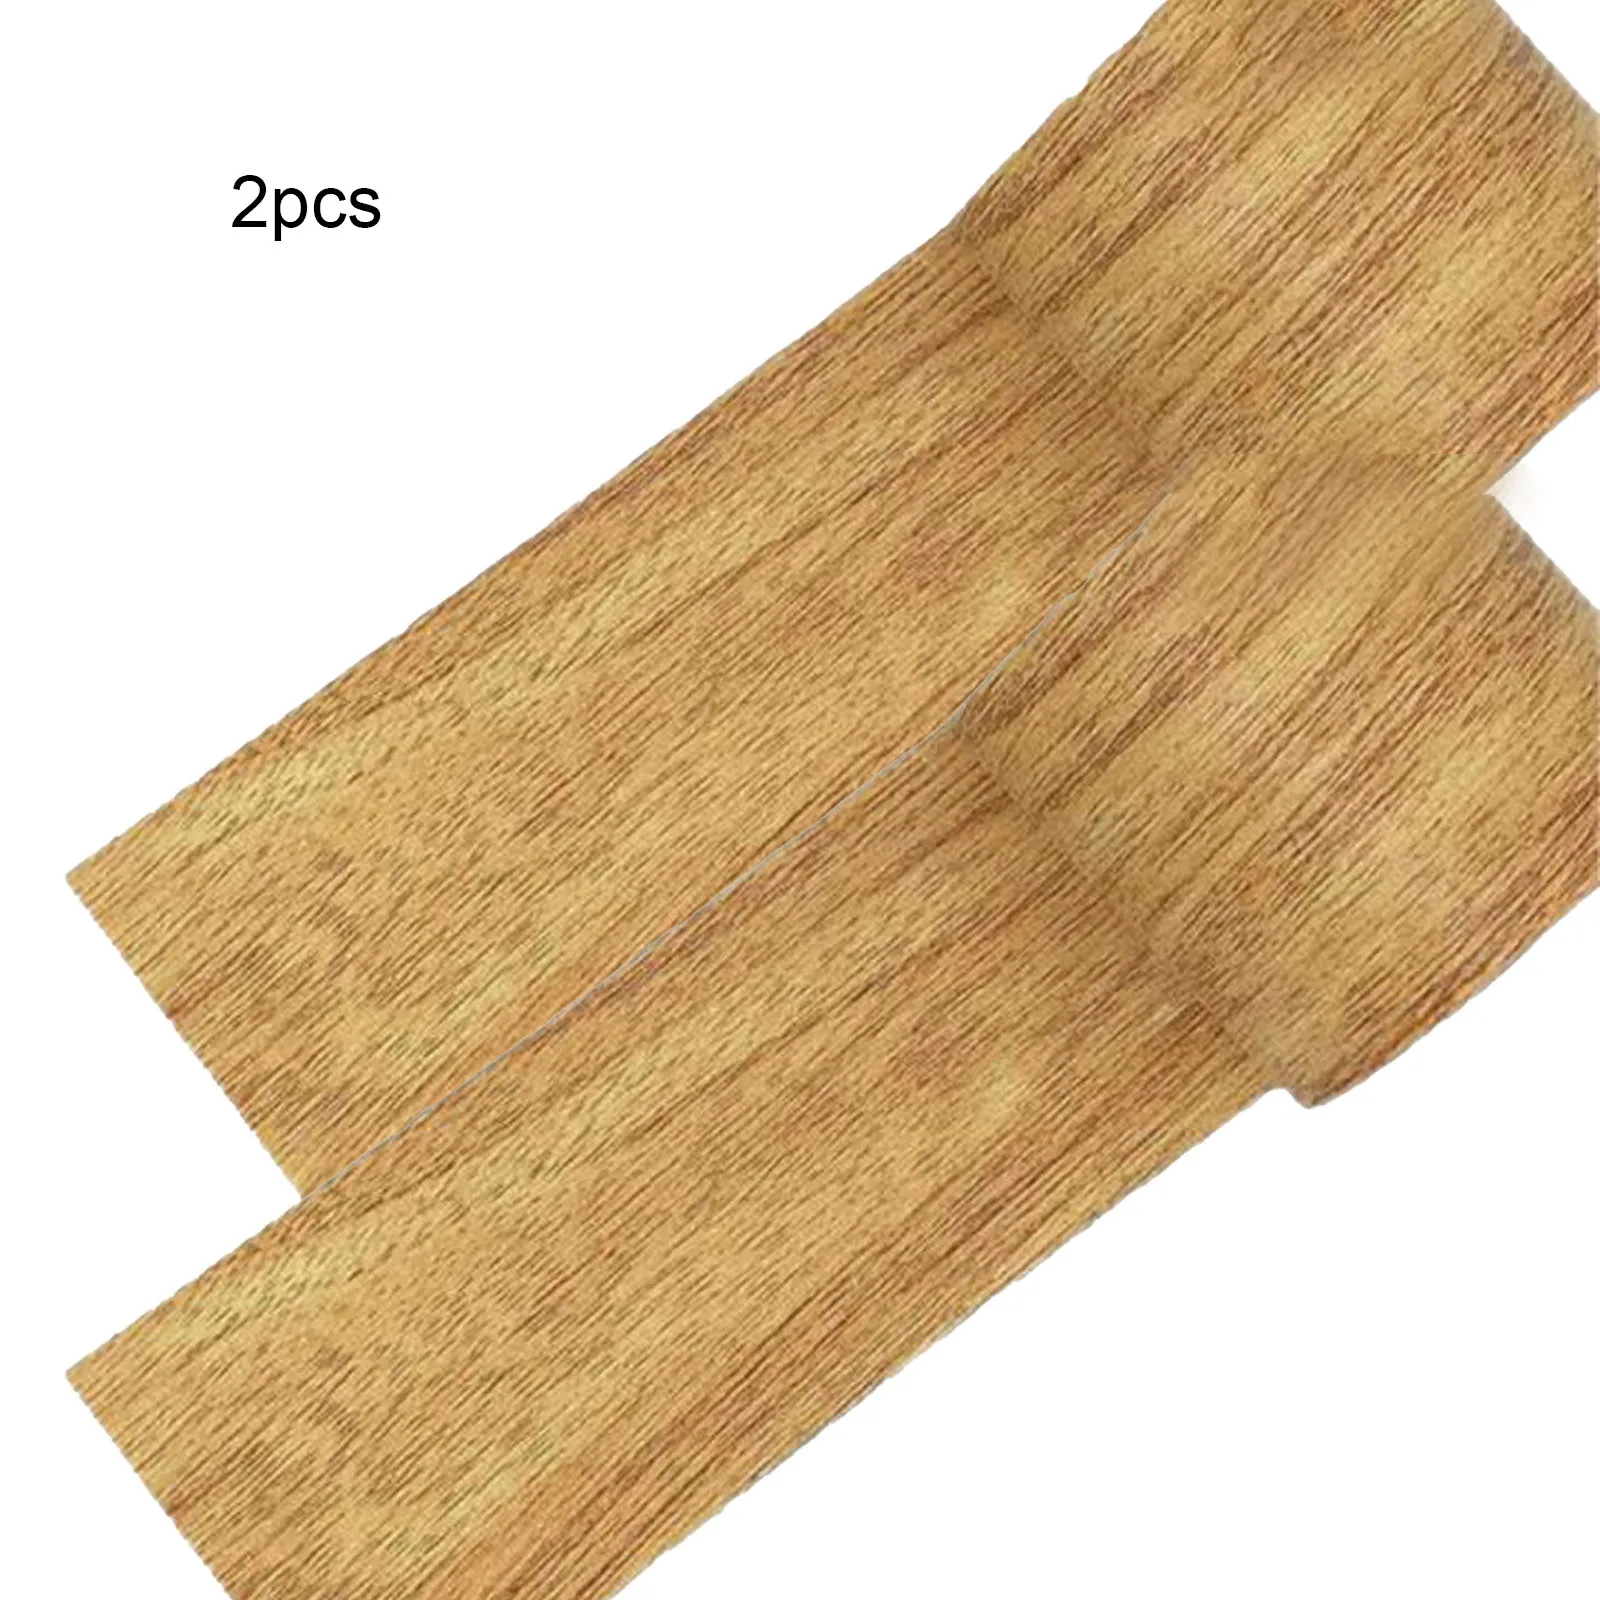 

Simulated Wood Grain Adhesive Tape 2pcs 8*450cm Baseboard Repair Furniture Tape Highly Adhesive Repair Tool Waterproof Brandnew